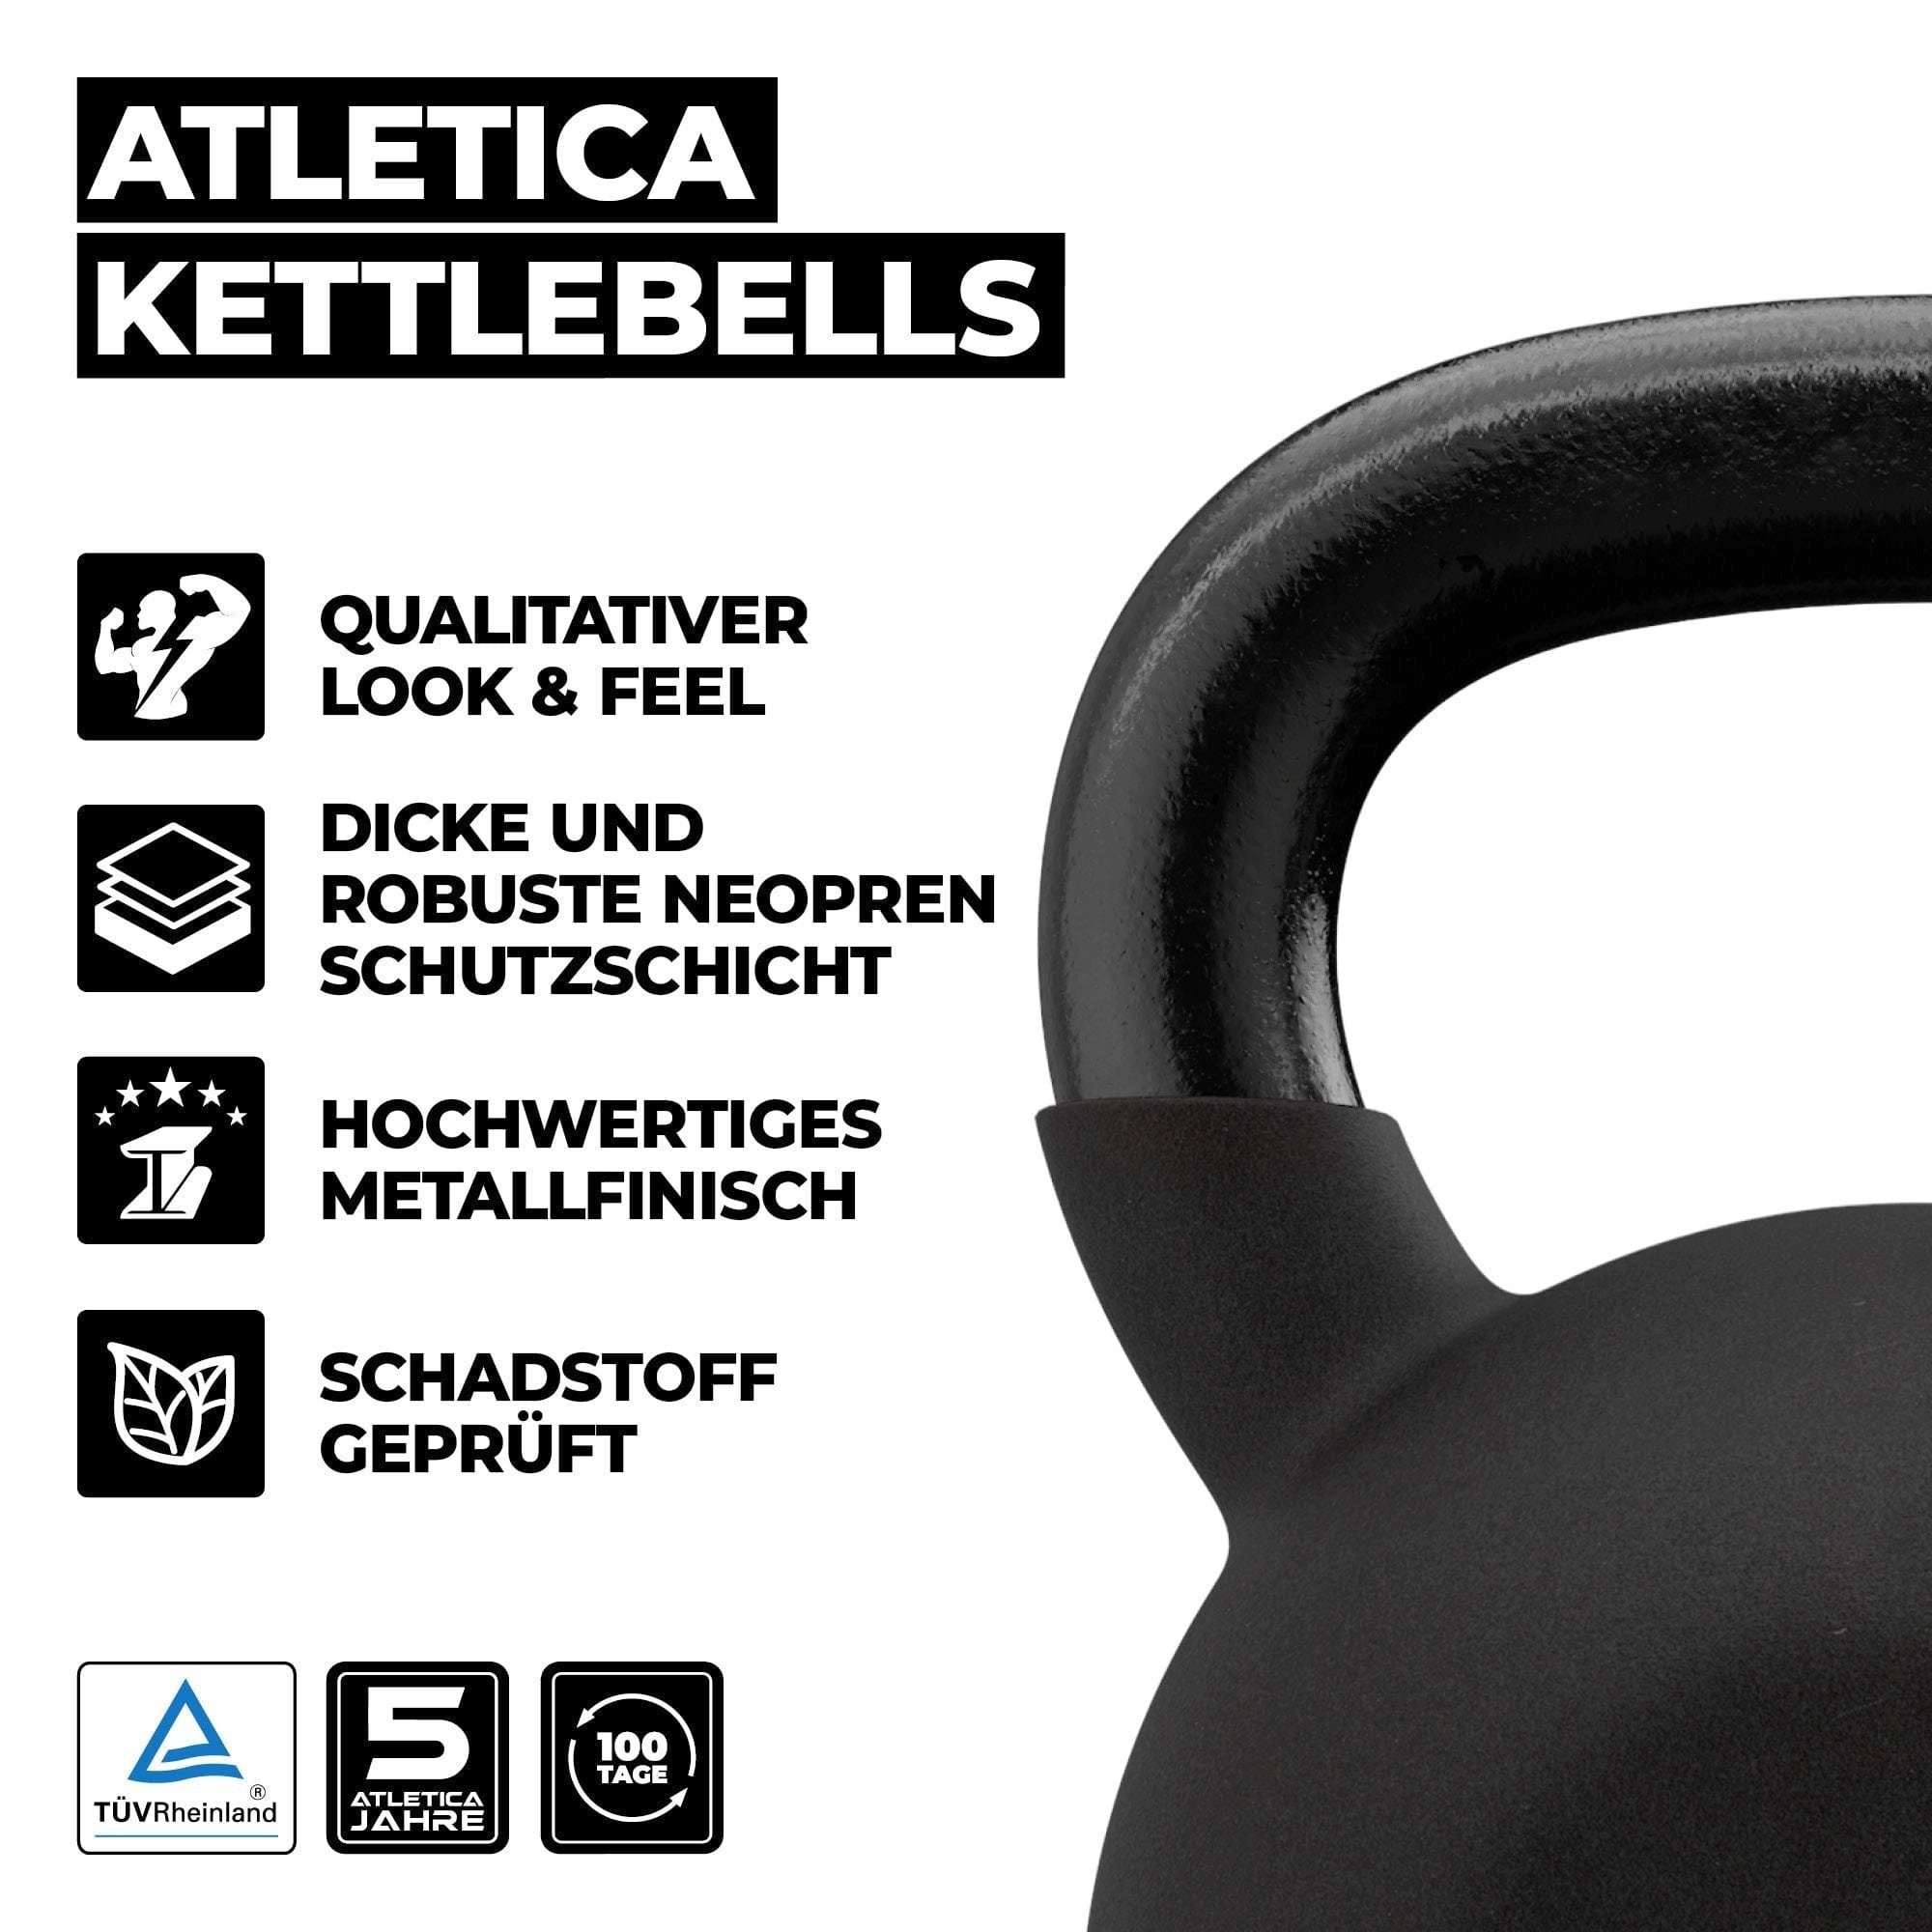 16kg 12kg Basic Set, Kettlebells ATLETICA Kettlebell TÜV geprüft 24kg, 8kg 20kg